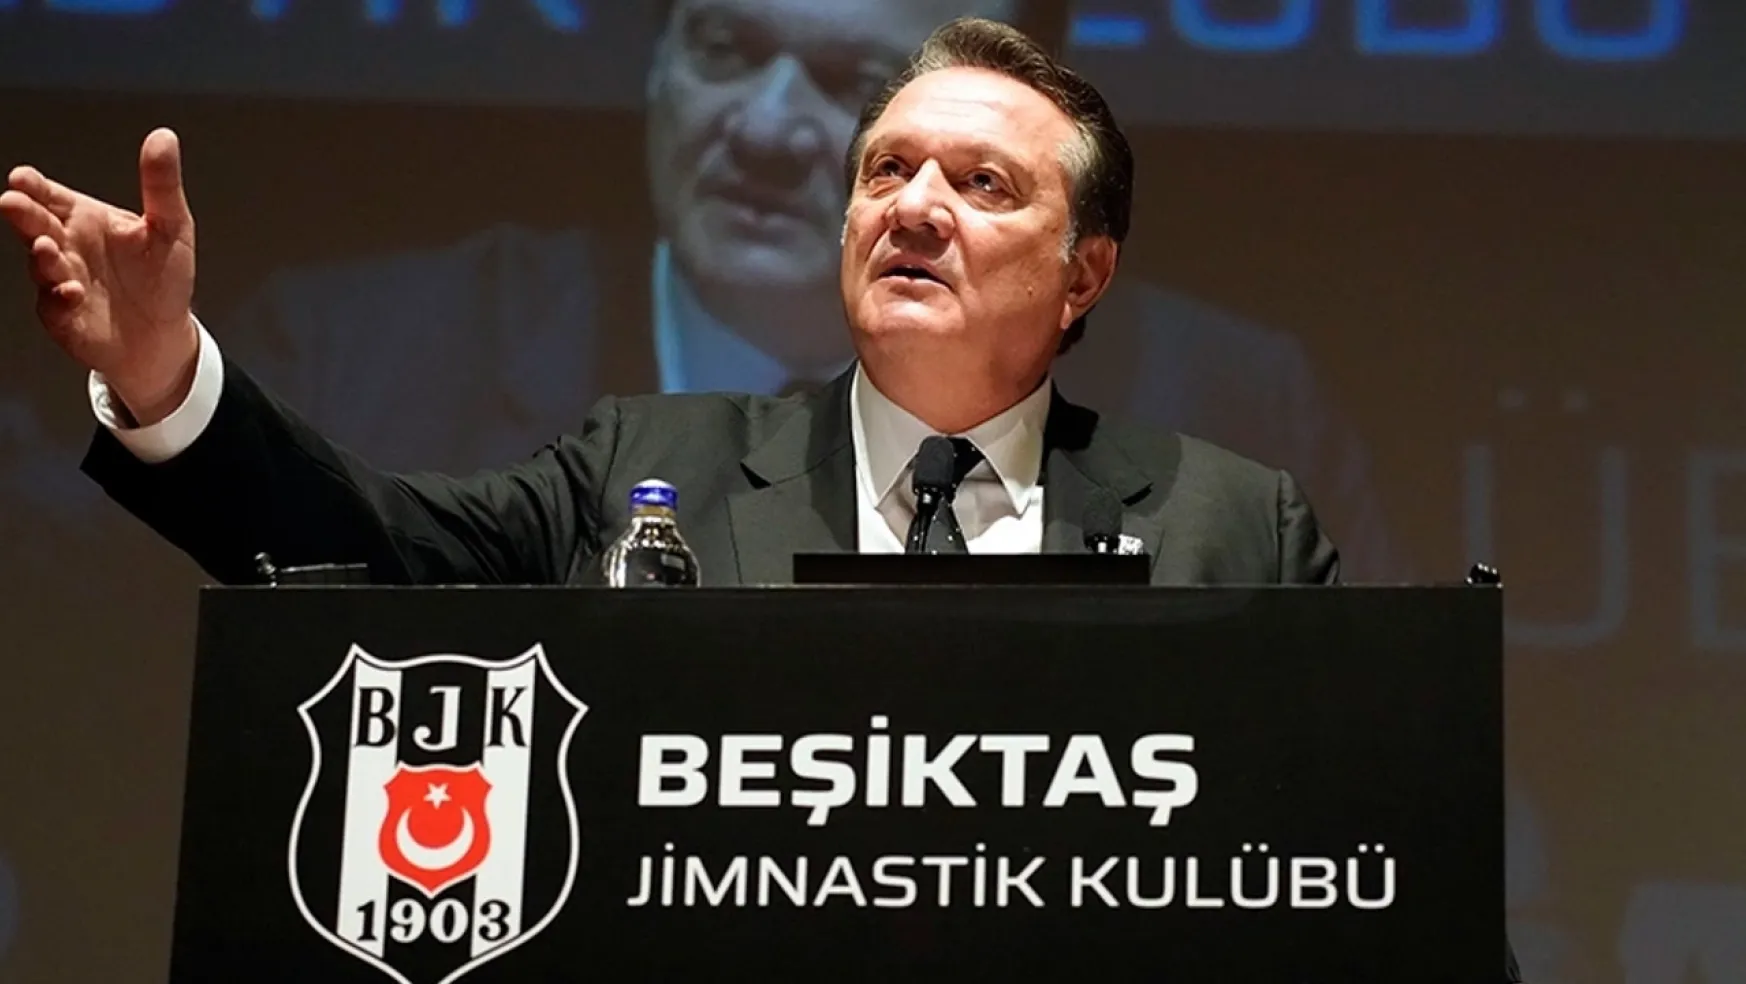 Beşiktaş JK Kulübünden Açıklama!